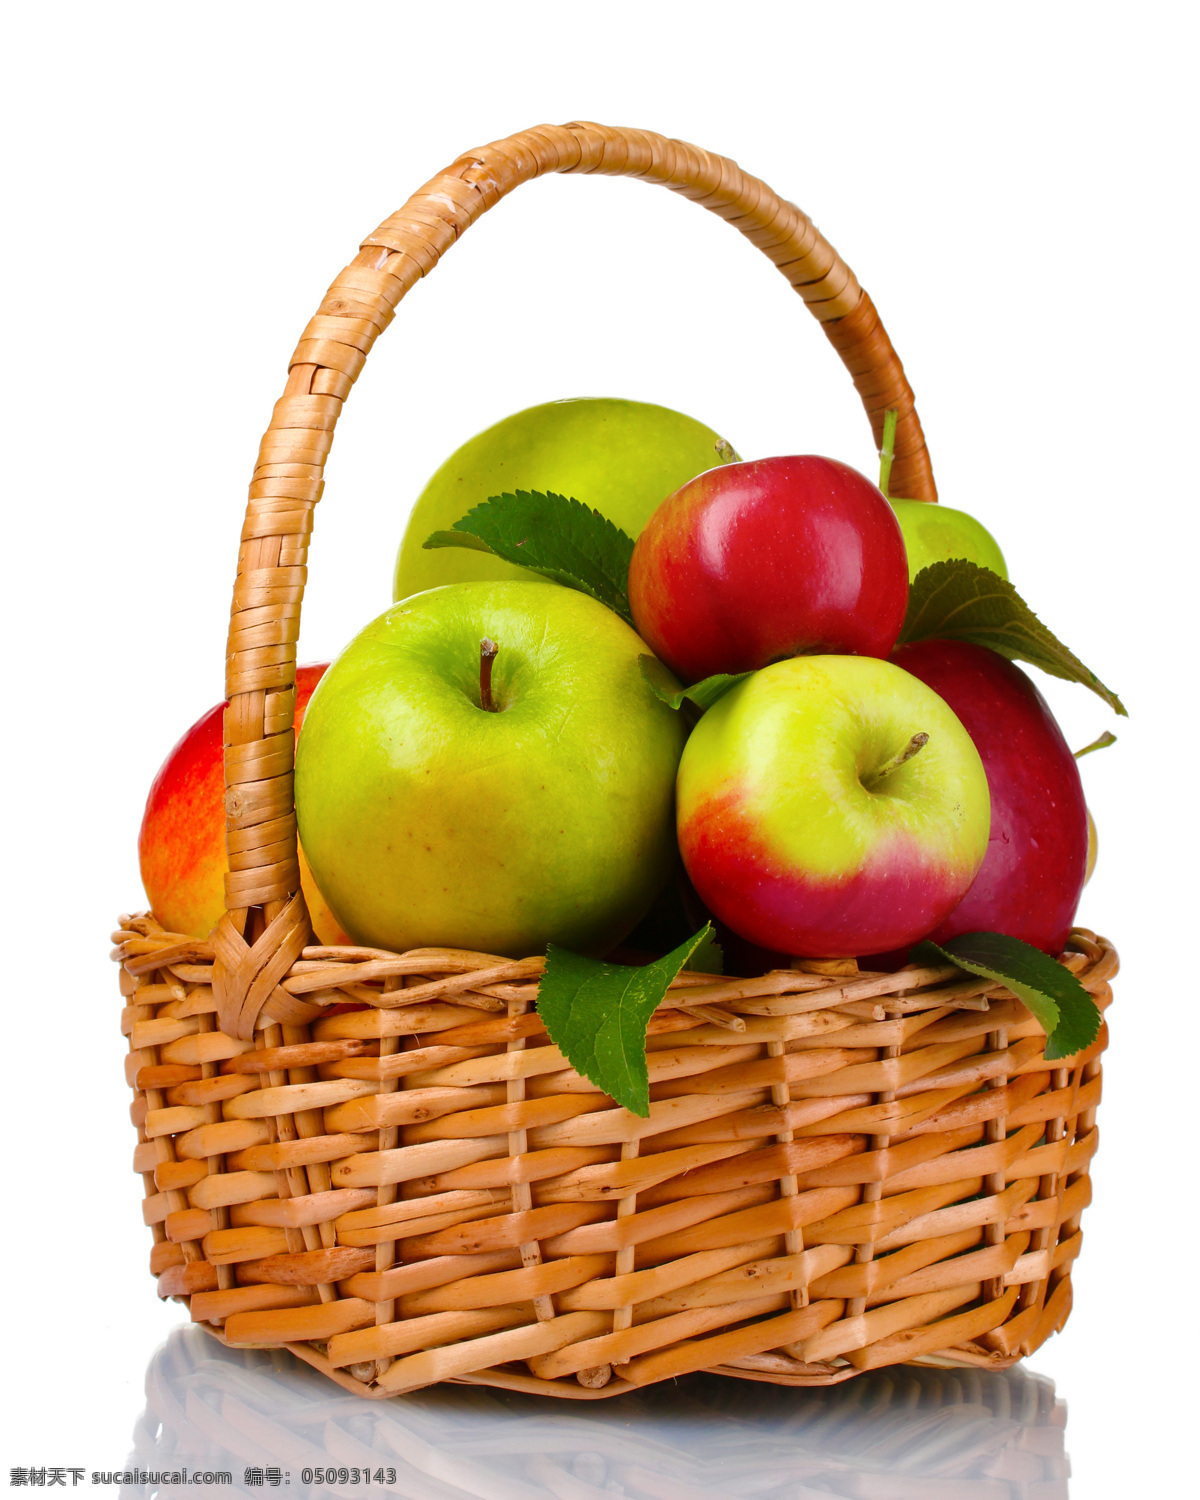 新鲜 苹果 新鲜水果 果篮 竹篮 篮子 红苹果 青苹果 苹果图片 餐饮美食